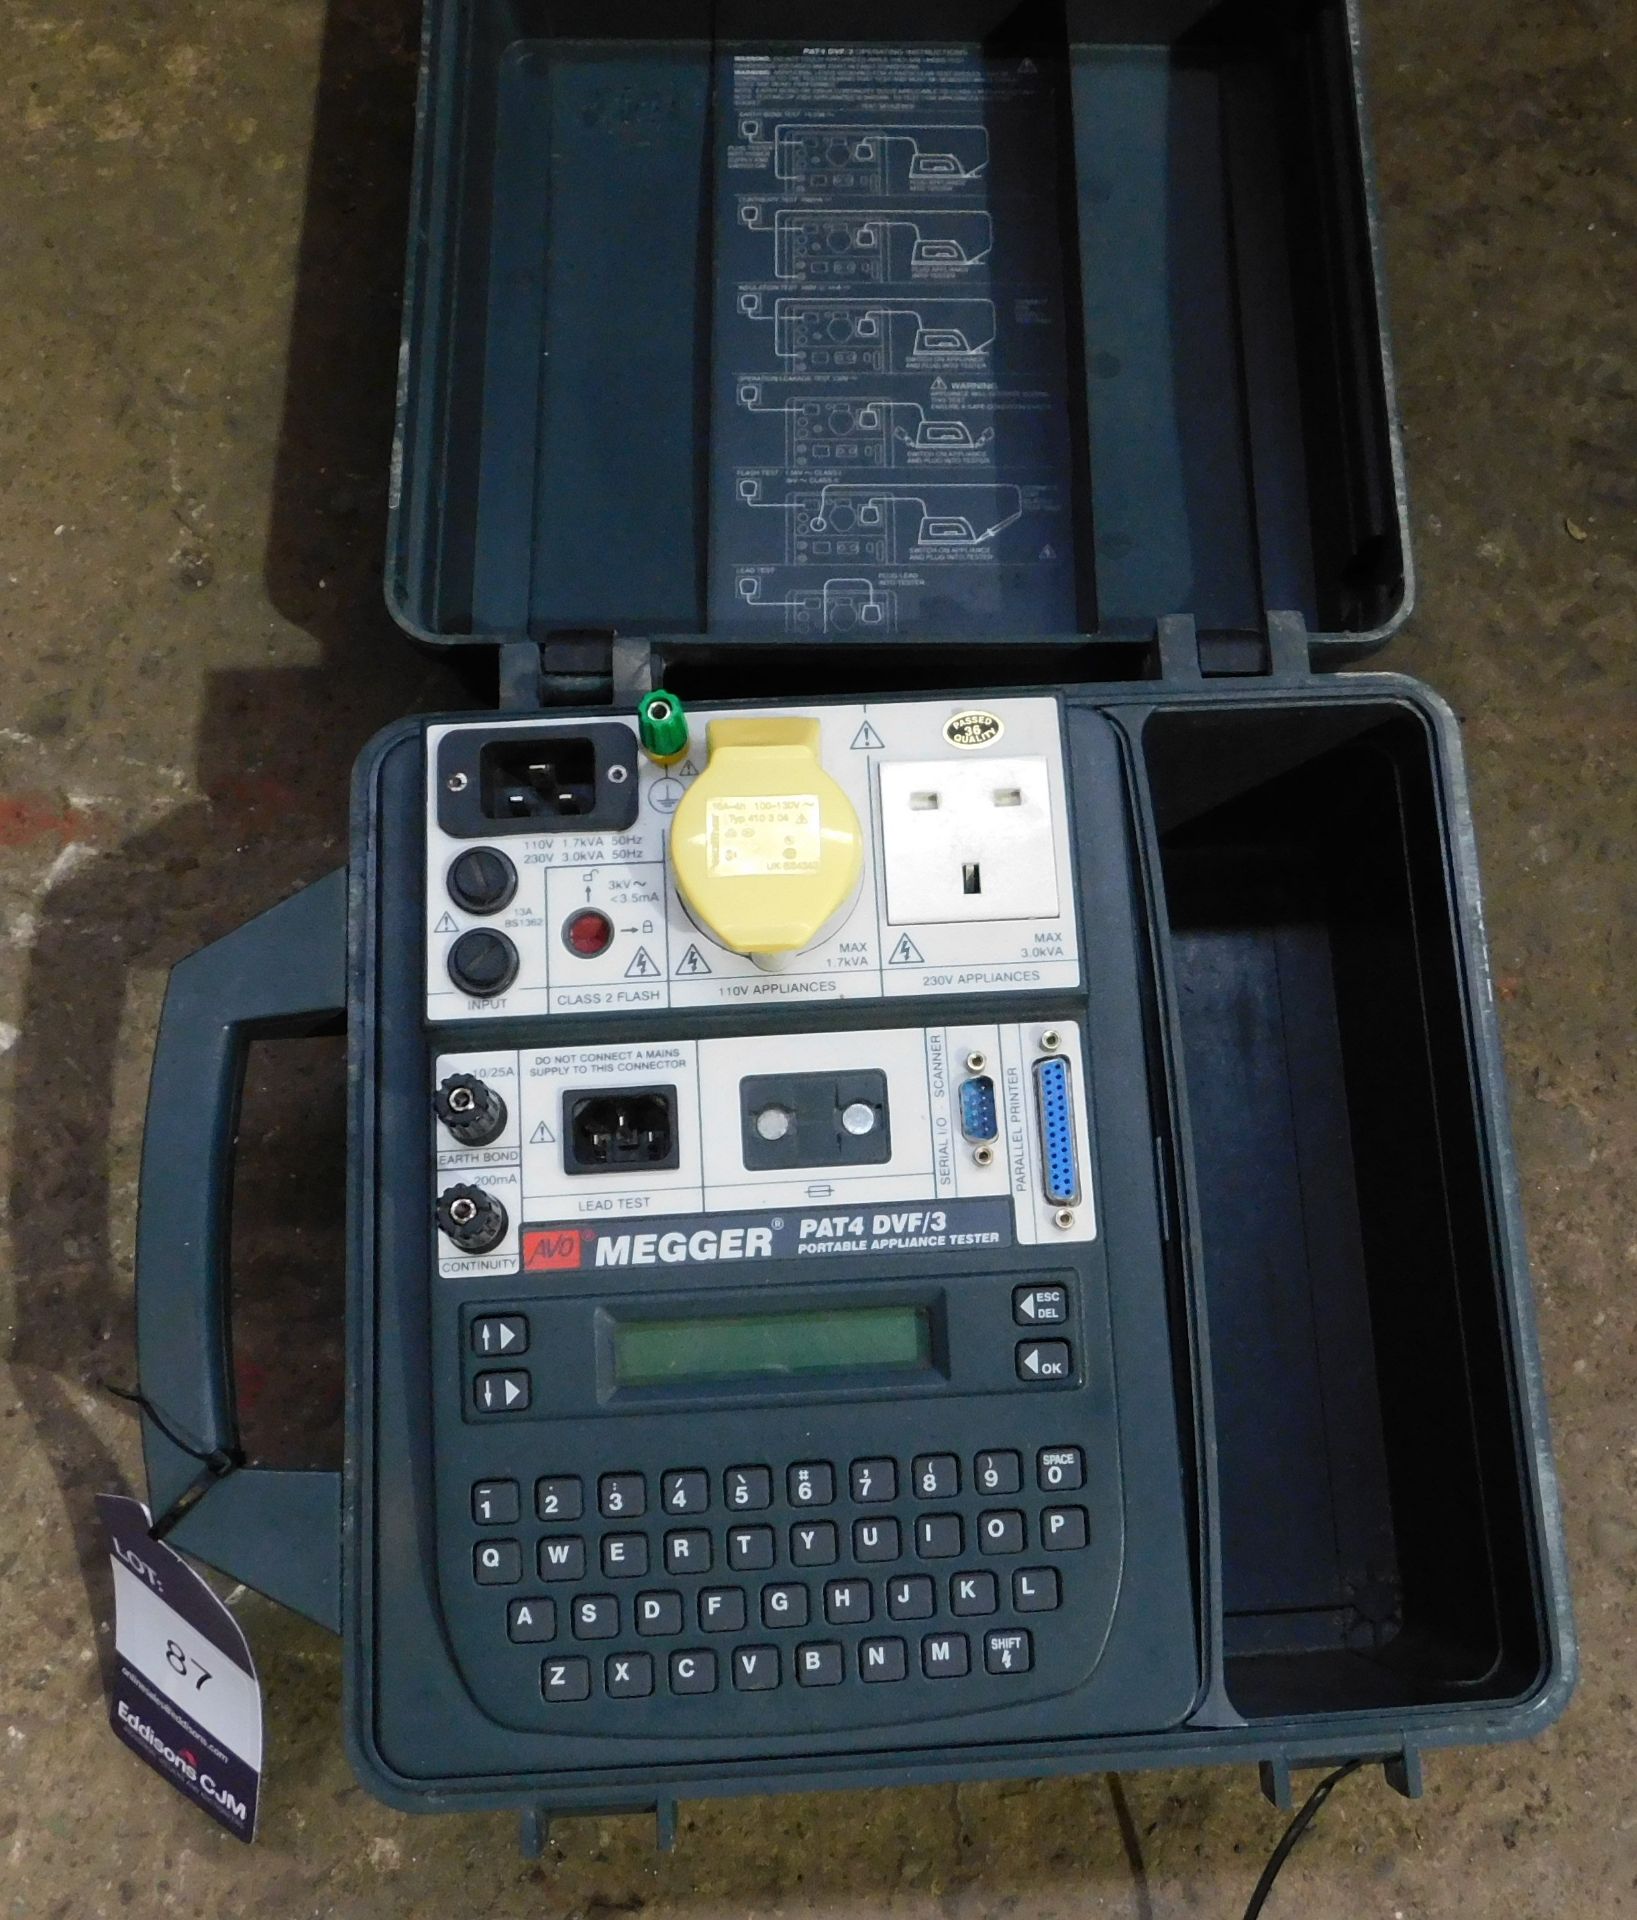 Megger PAT4 DVF/3 Portable Appliance Tester